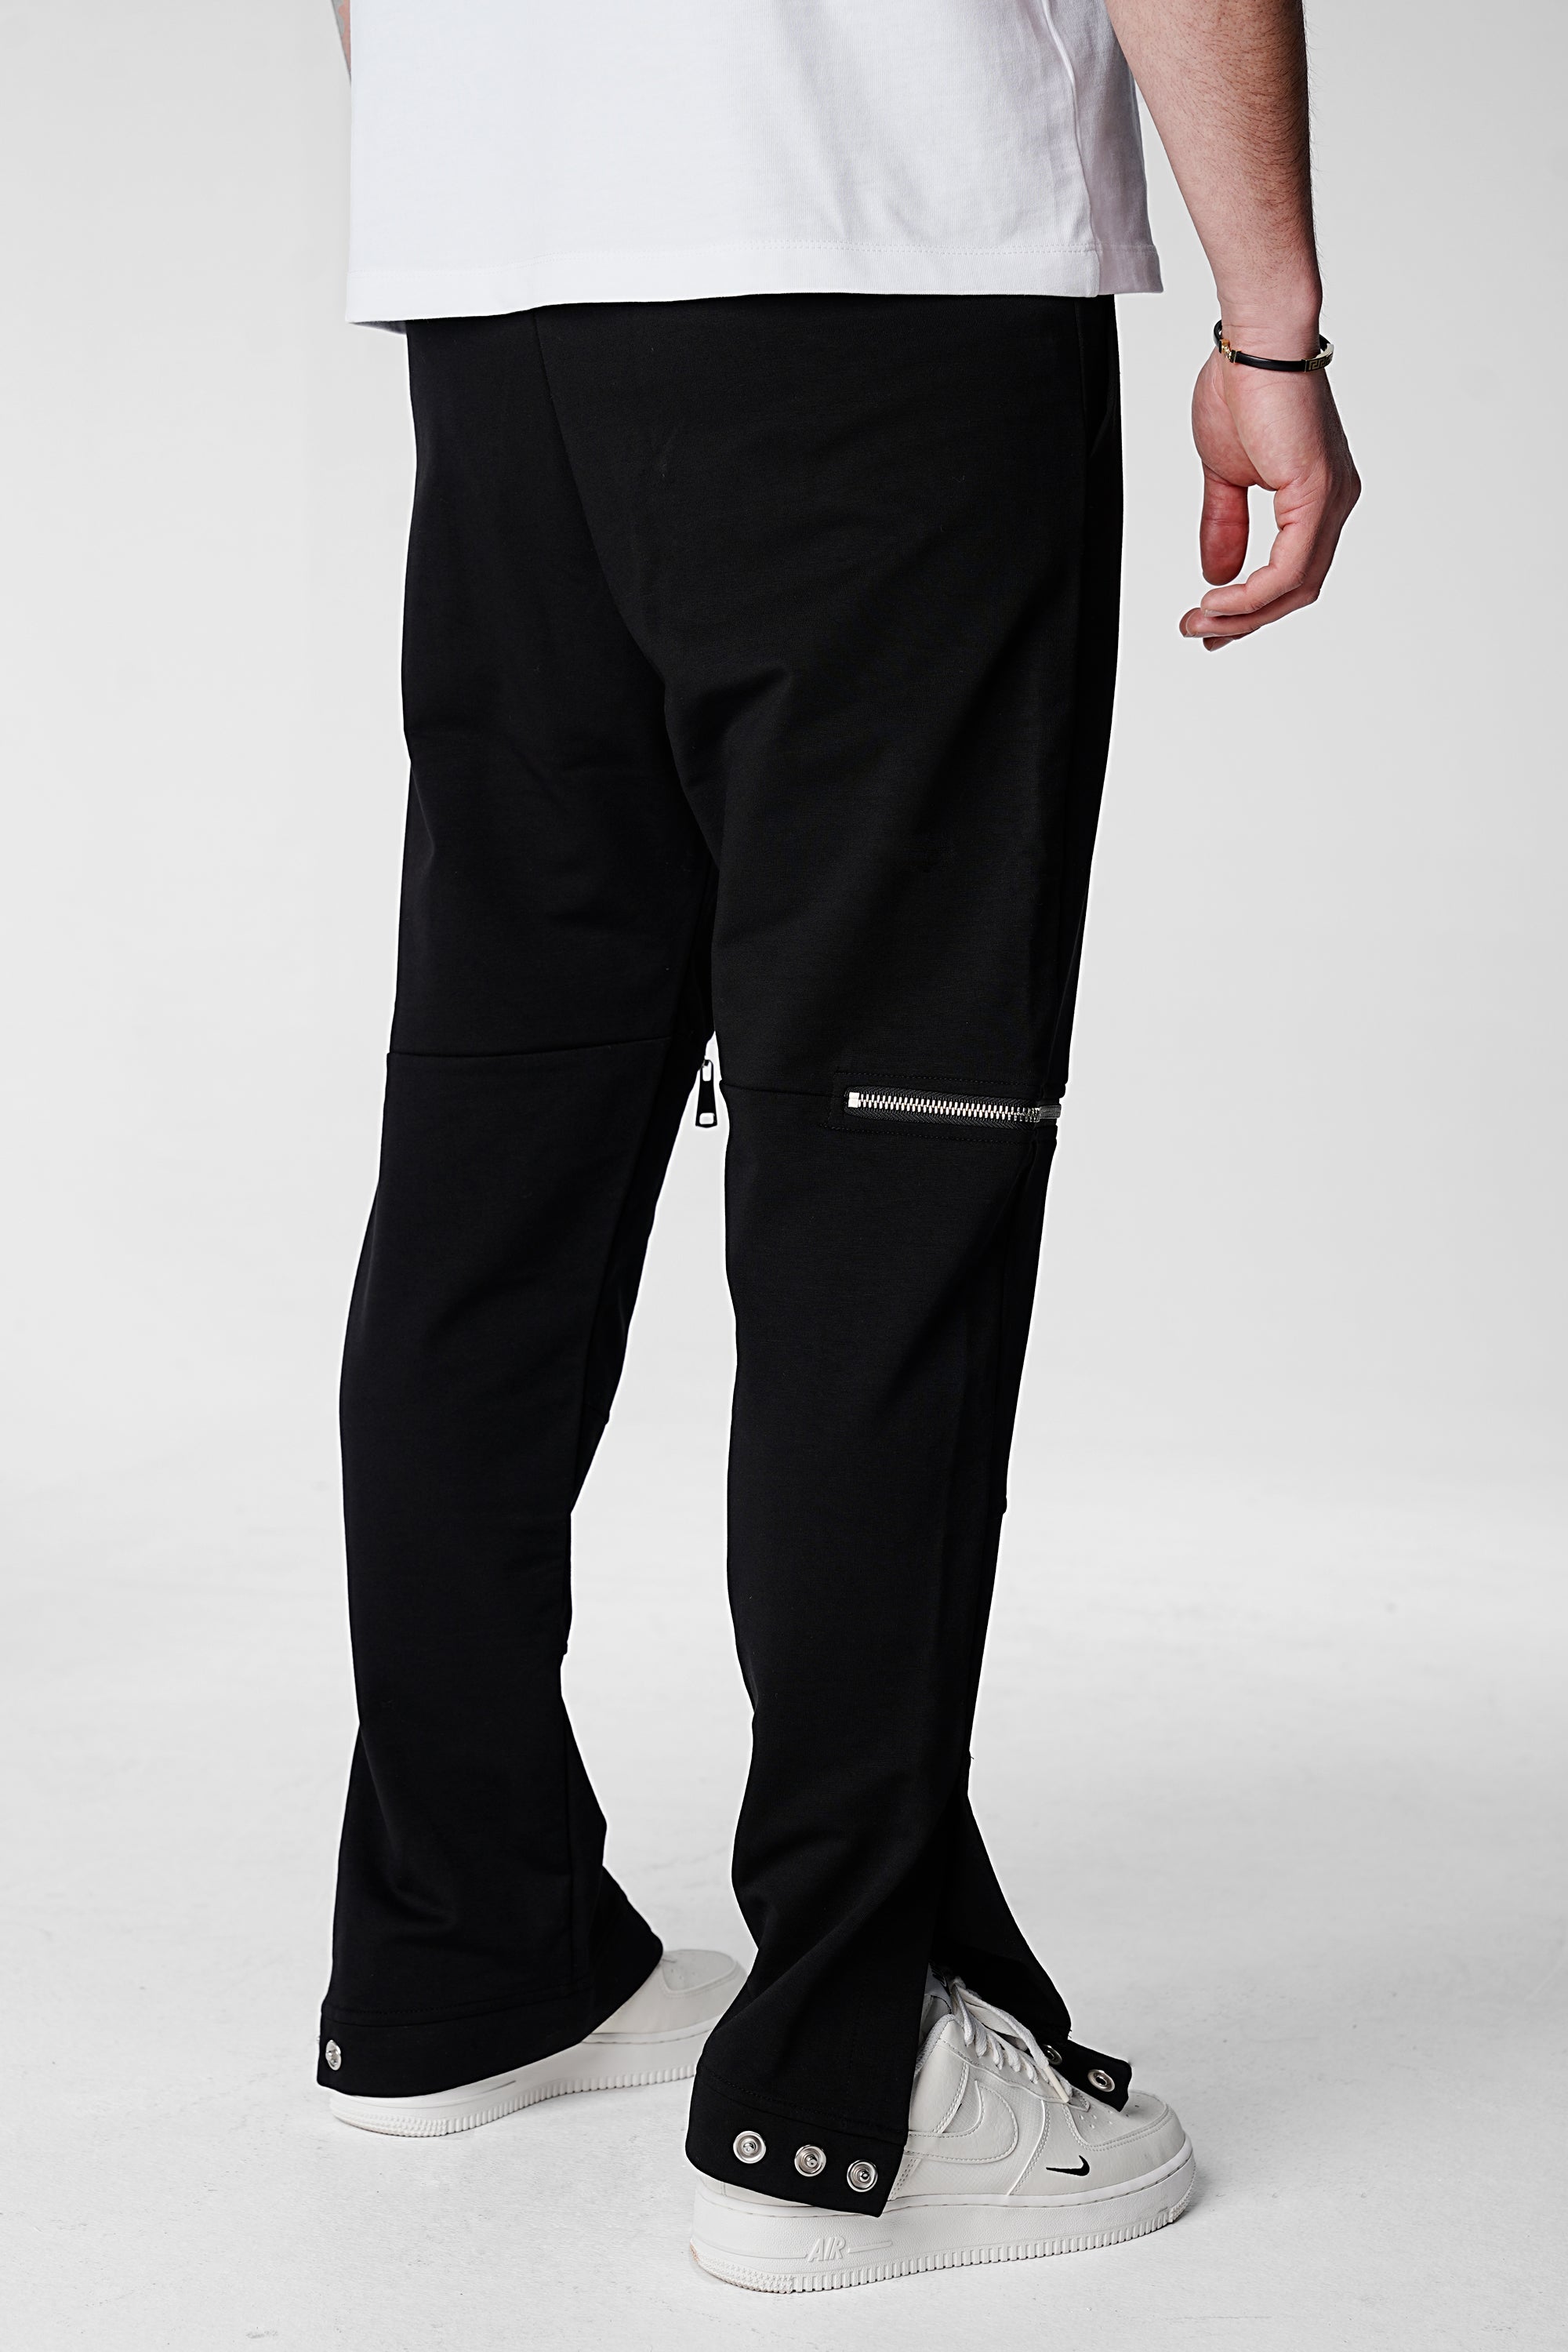 Regular Fit Premium Glory Pants - Black - UNEFFECTED STUDIOS® - CARGO PANTS - UNEFFECTED STUDIOS®